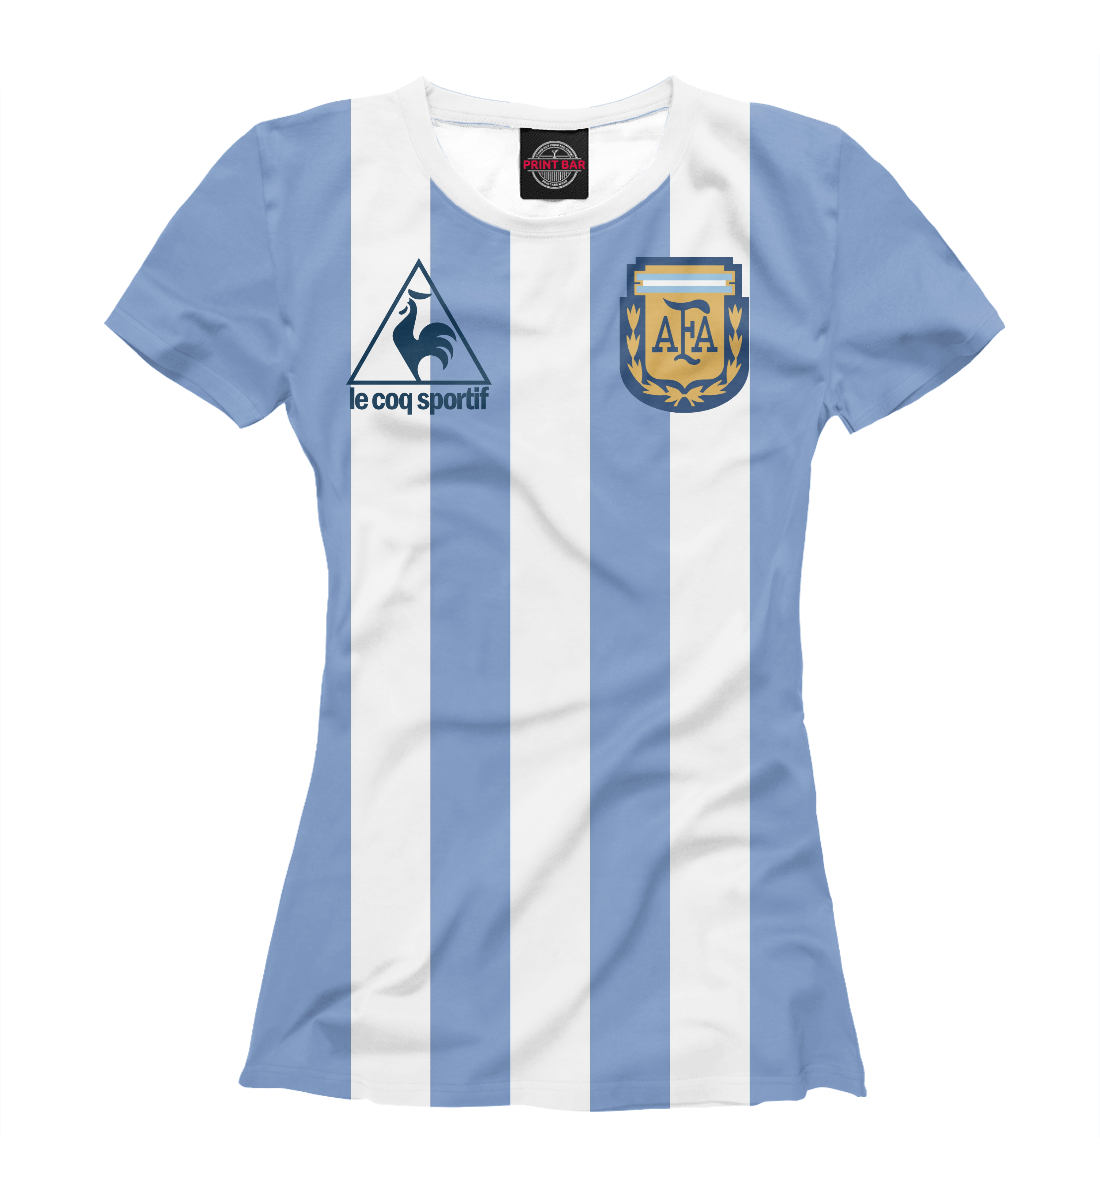 Футболка Maradona для женщин, артикул: SAN-232235-fut-1mp